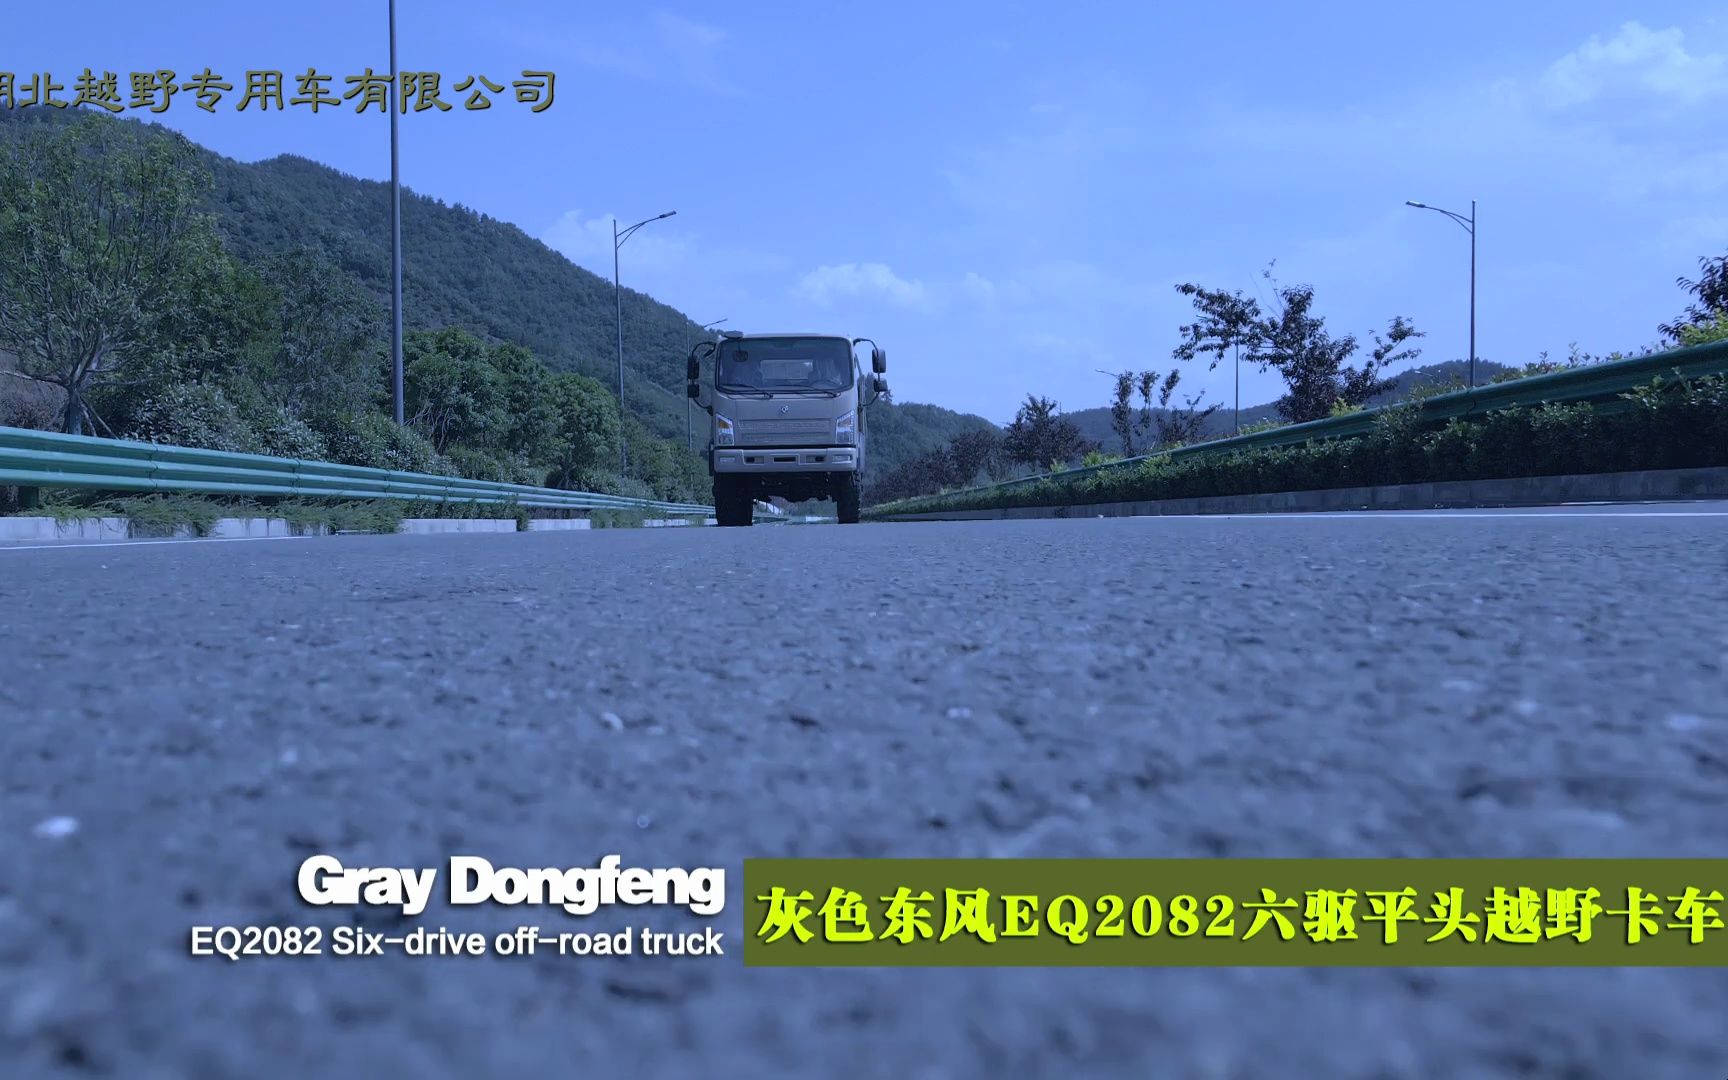 东风6x6平头“山猫系列出口版”轻型越野运输专用卡车展示